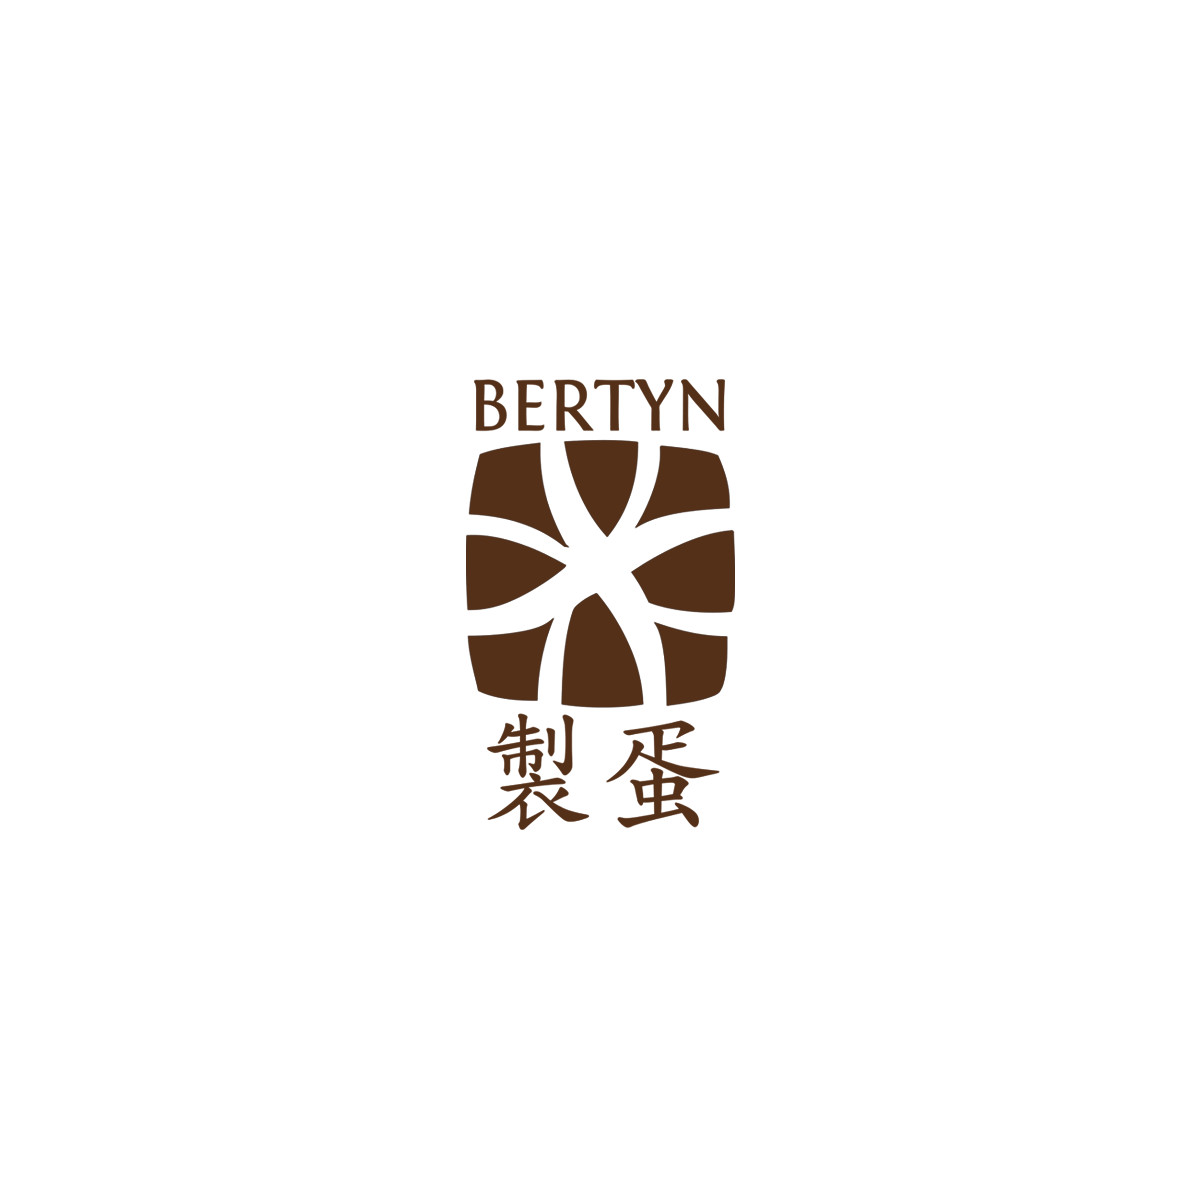  Bertyn - Authentischer Bio-Seitan 

  Bertyn...